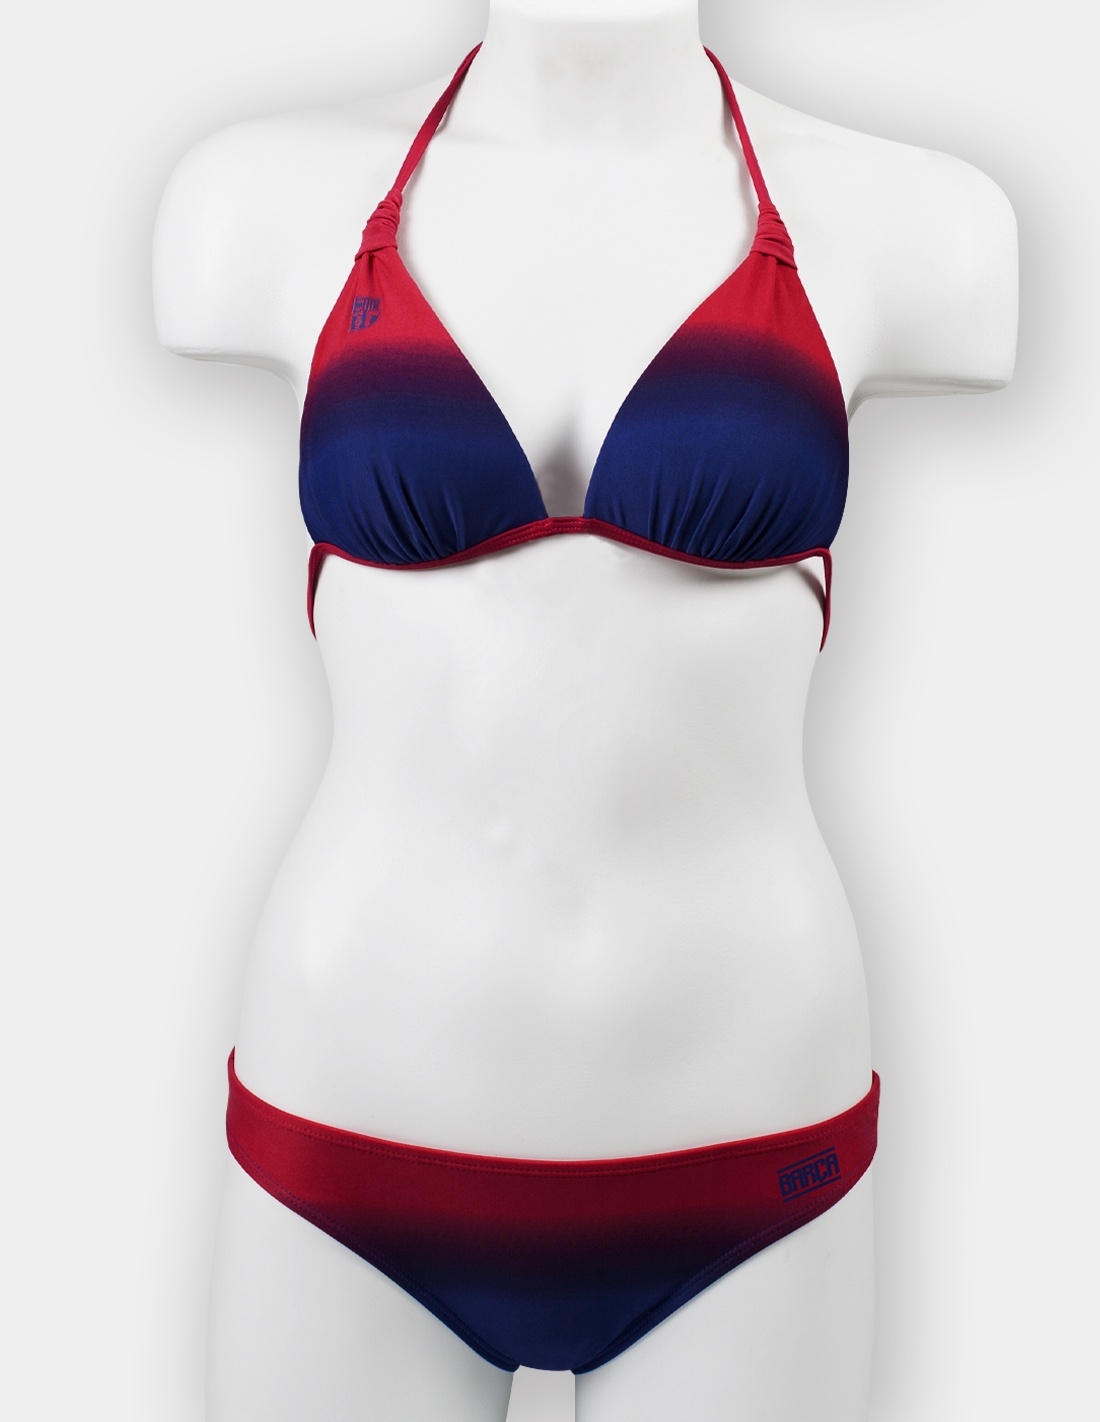 ventana Incierto Nervio Bikini para mujer del Barça Talla M Color Blaugrana